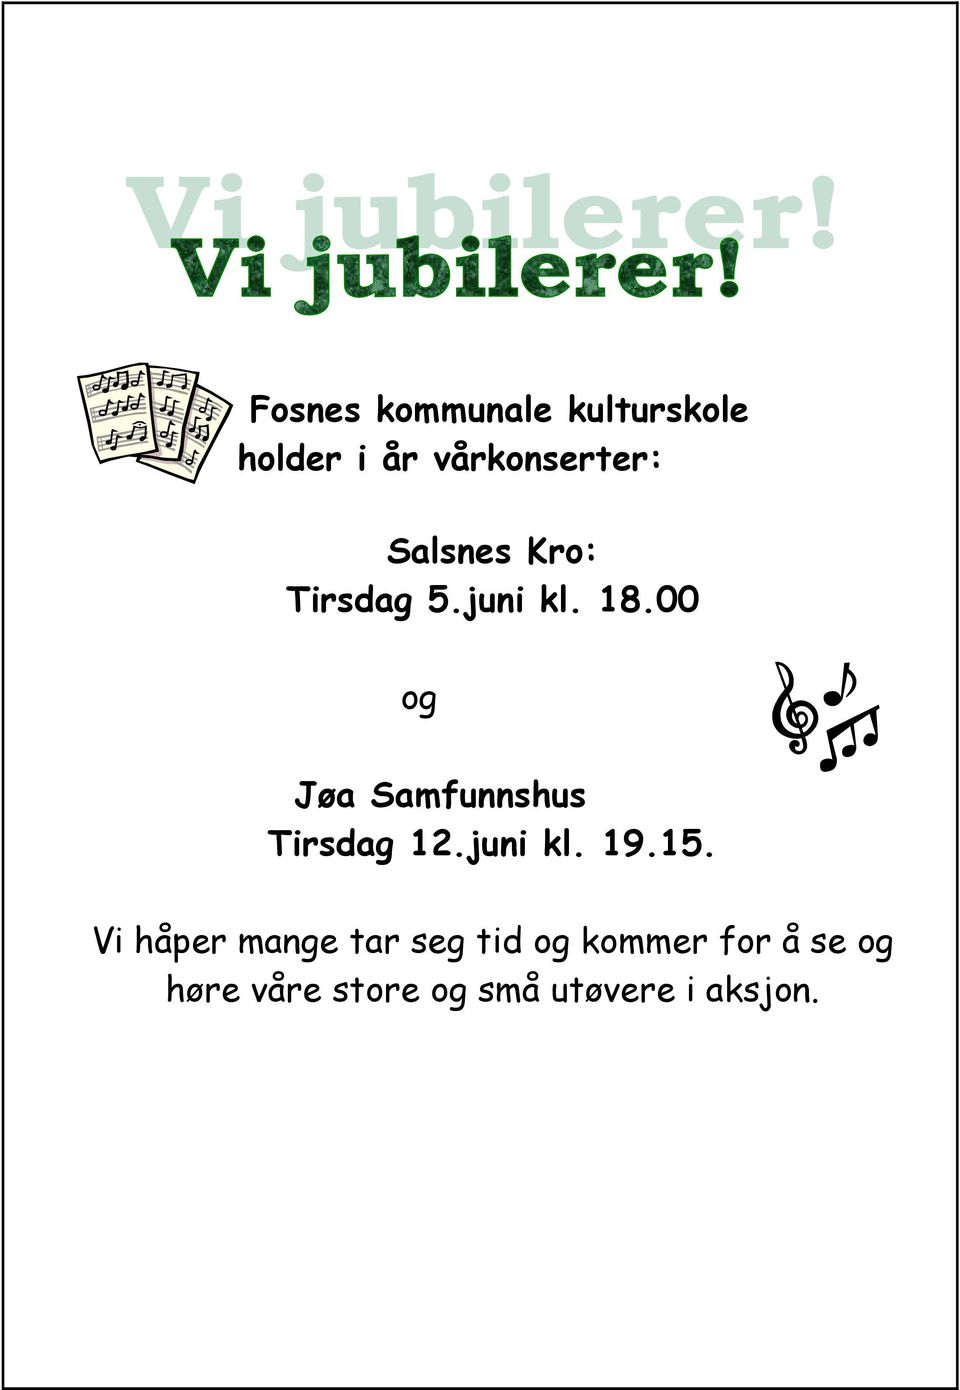 00 og Jøa Samfunnshus Tirsdag 12.juni kl. 19.15.